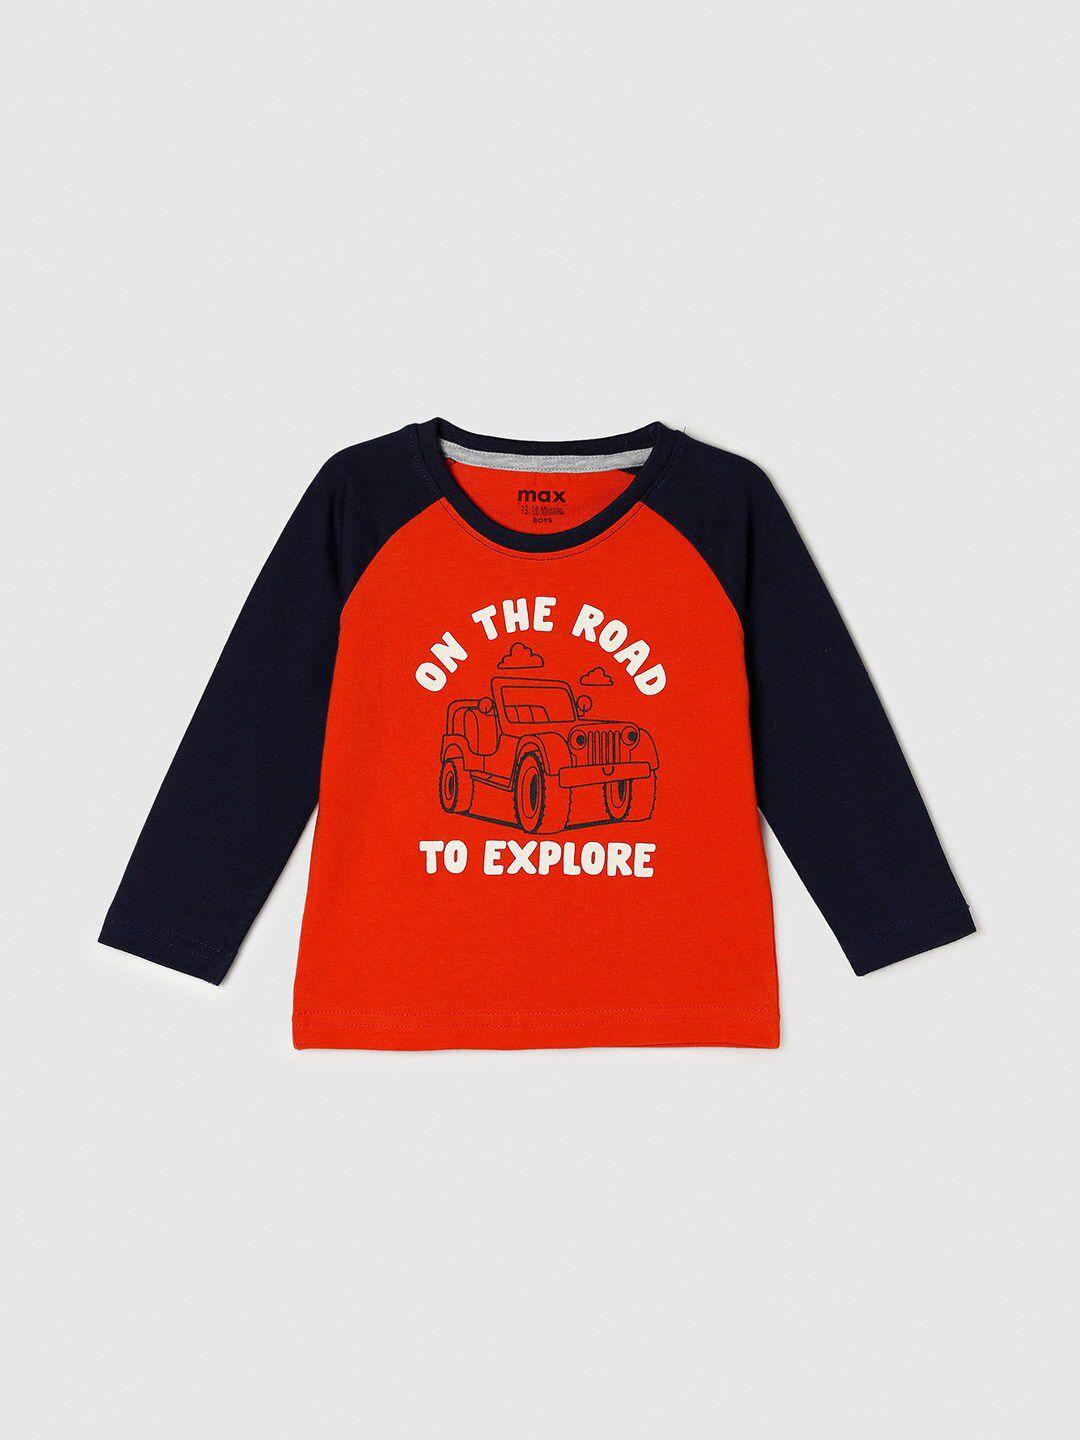 max boys orange printed t-shirt